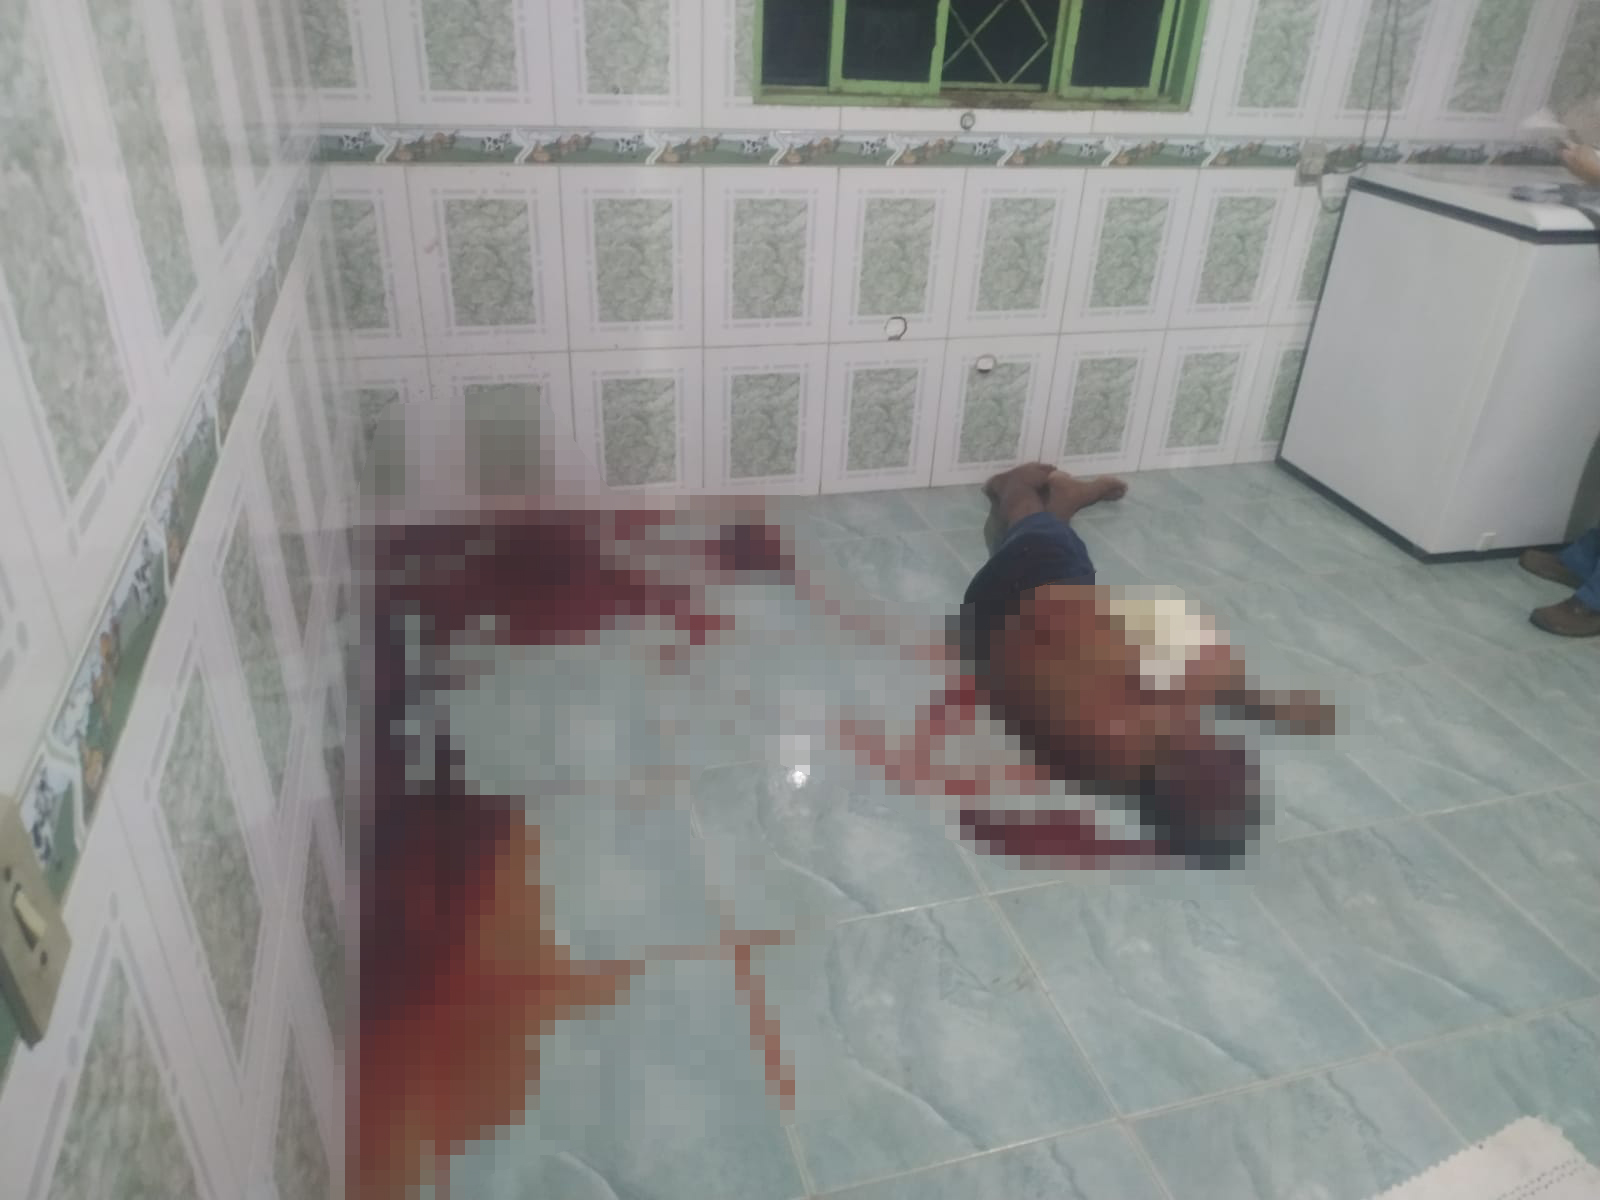 SINOP: Idoso é brutalmente executado com vários tiros dentro de residência